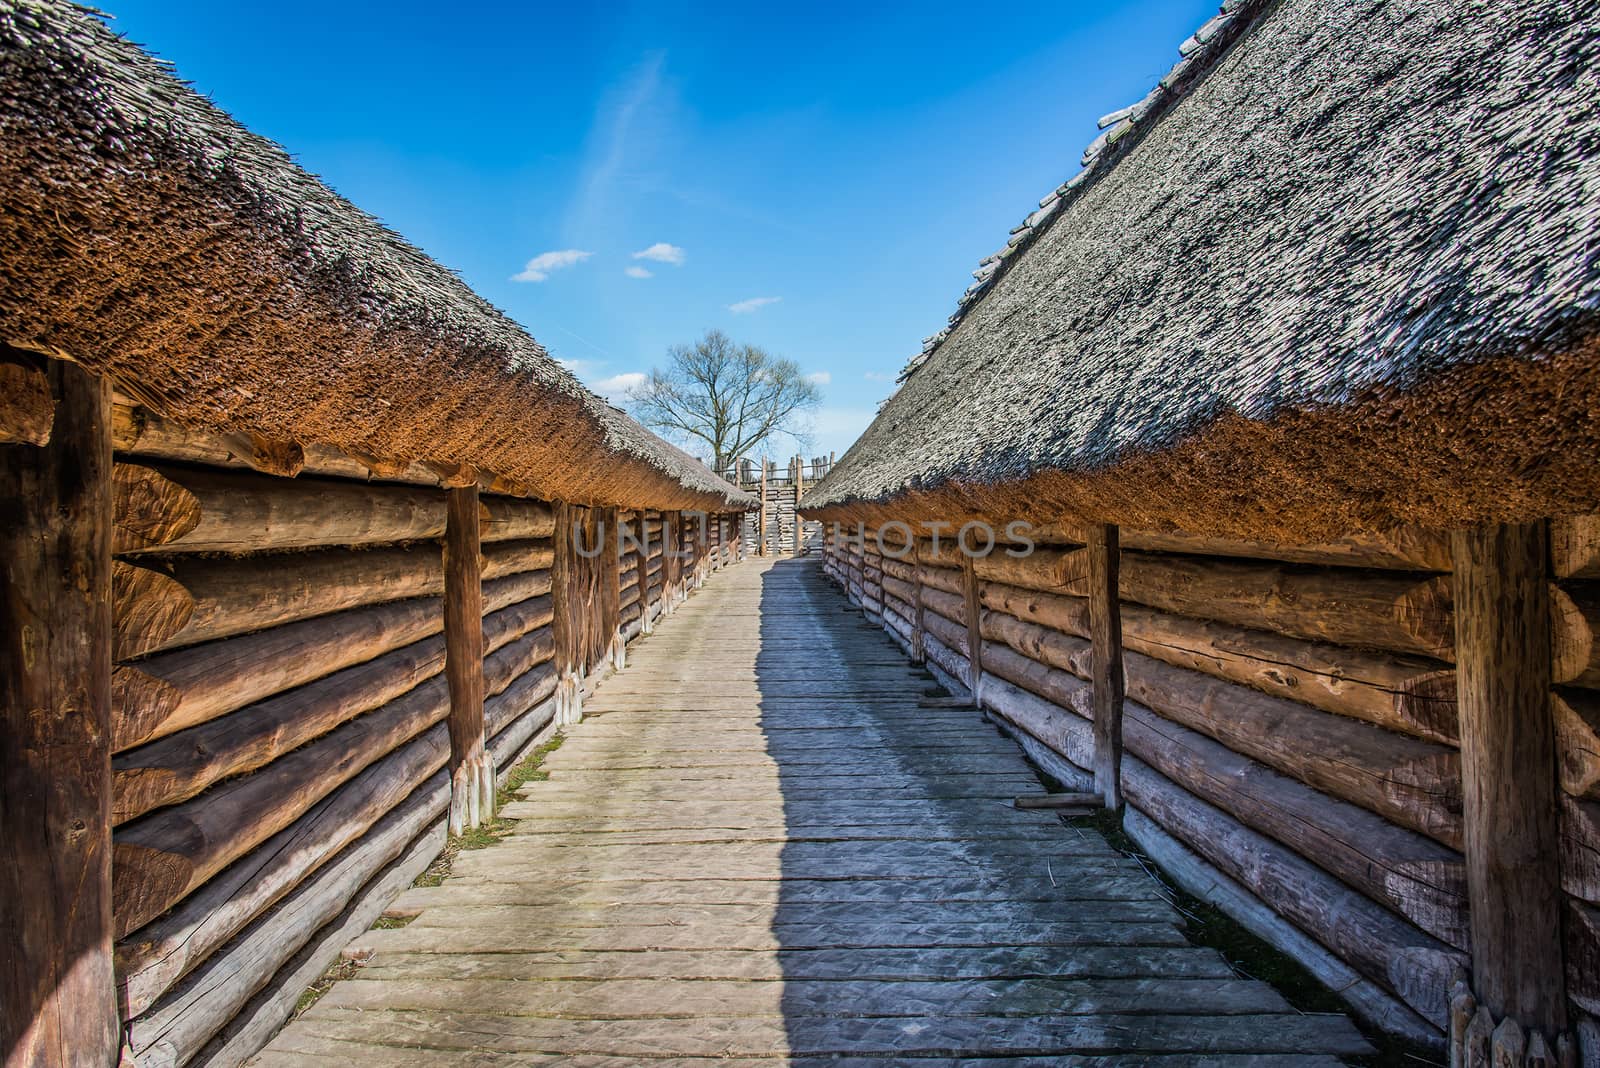 Ancient slavic houses in Heritage Park in Biskupin, Poland